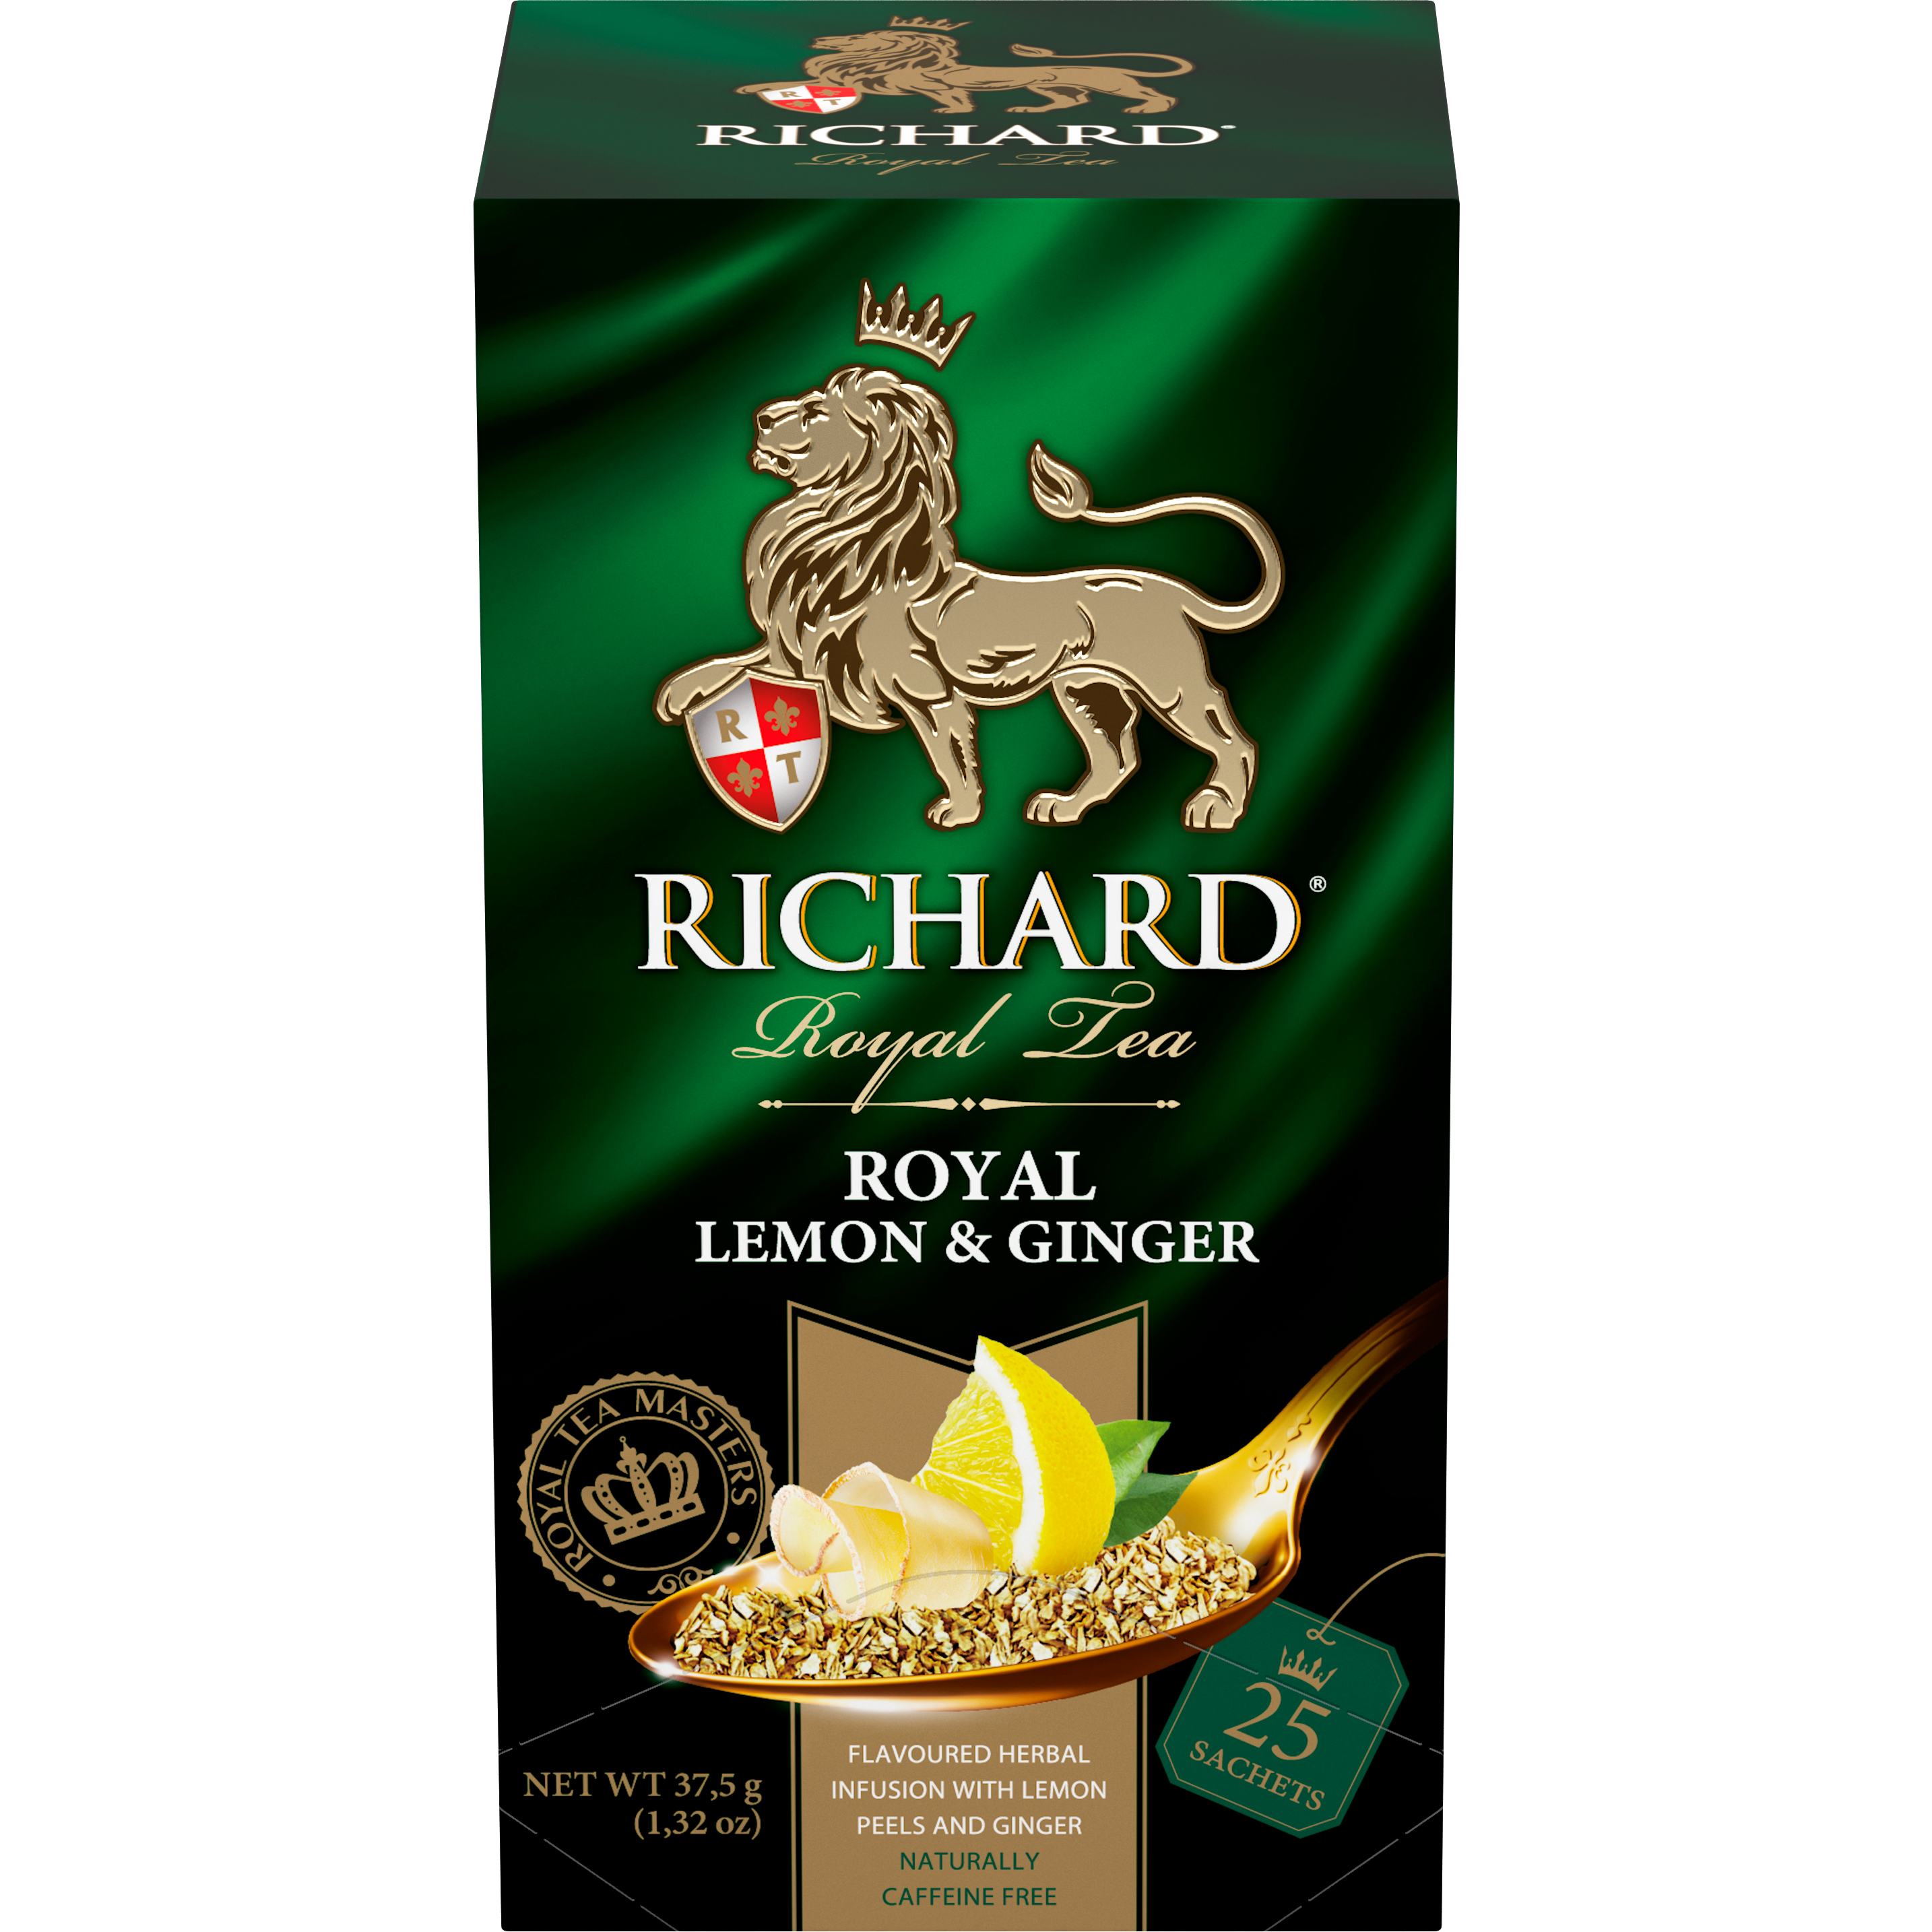 Royal Lemon & Ginger, roheline tee sidruni ja ingveriga, teekotid 25x2g. - Richard Tea Estonia